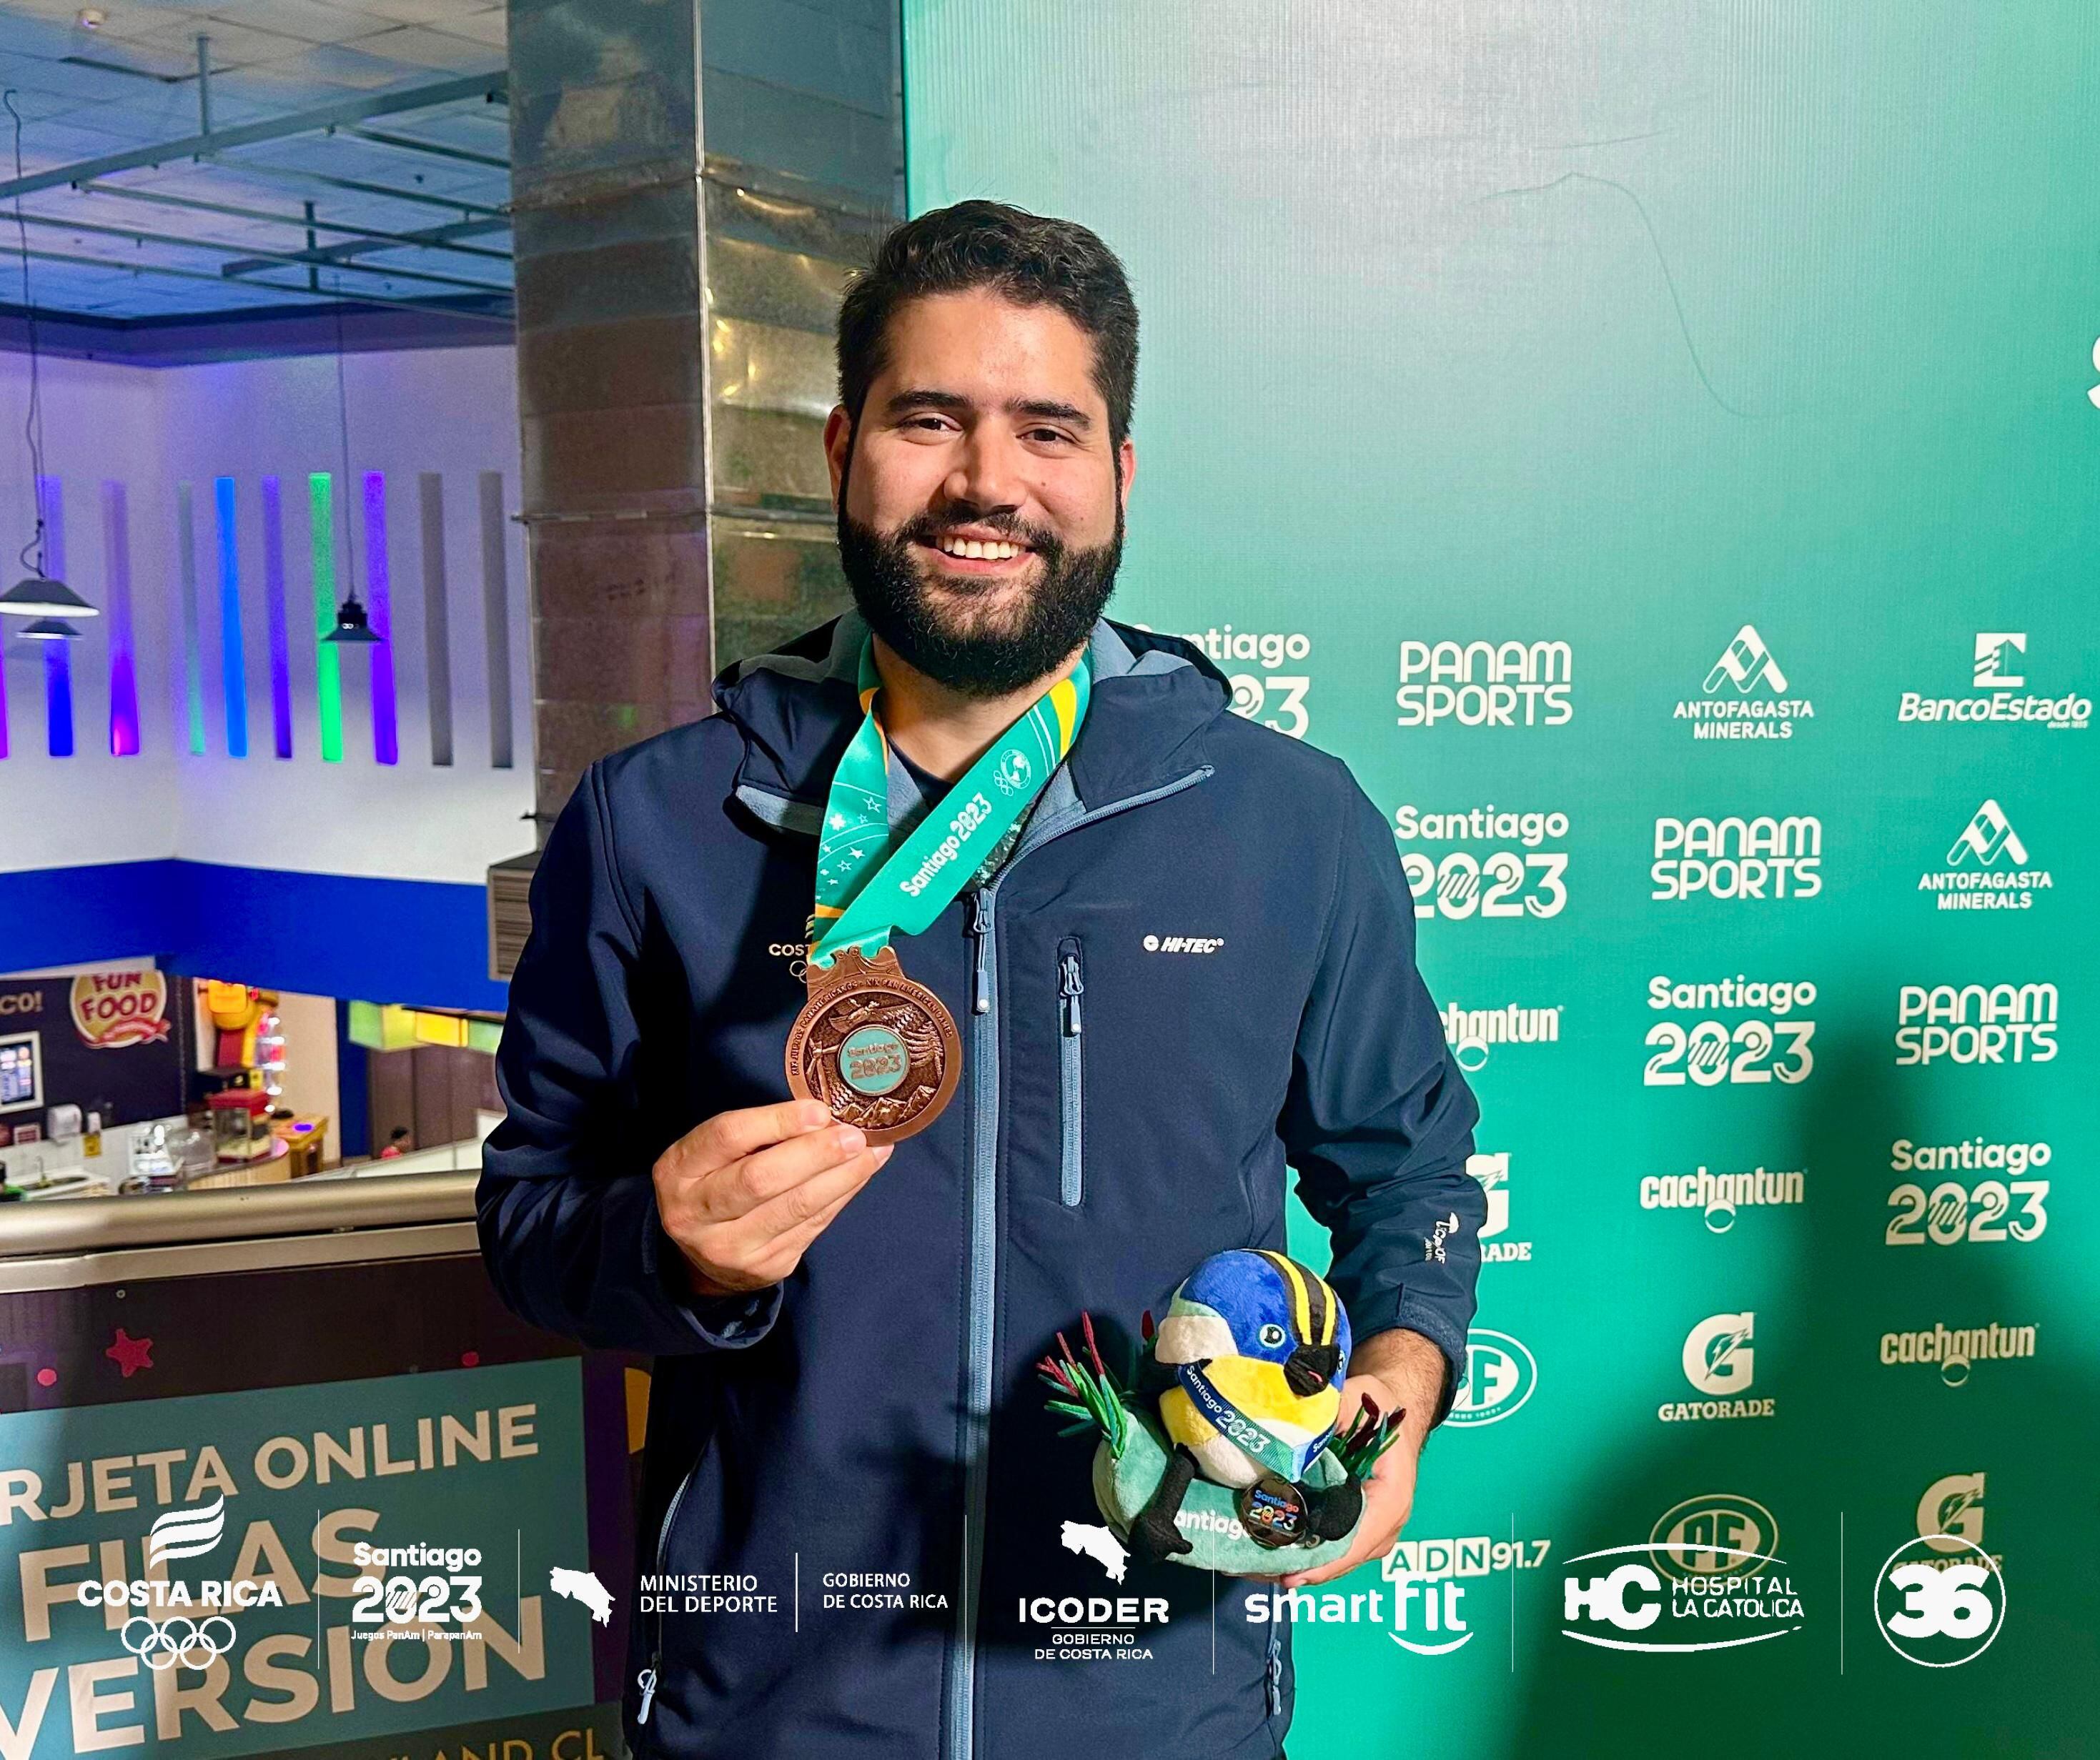 Marco Moretti cerró su participación con una medalla de bronce en el evento individual masculino de boliche. El bolichista sumó dos preseas en los Panamericanos de Santiago 2023. Cortesía: Comité Olímpico